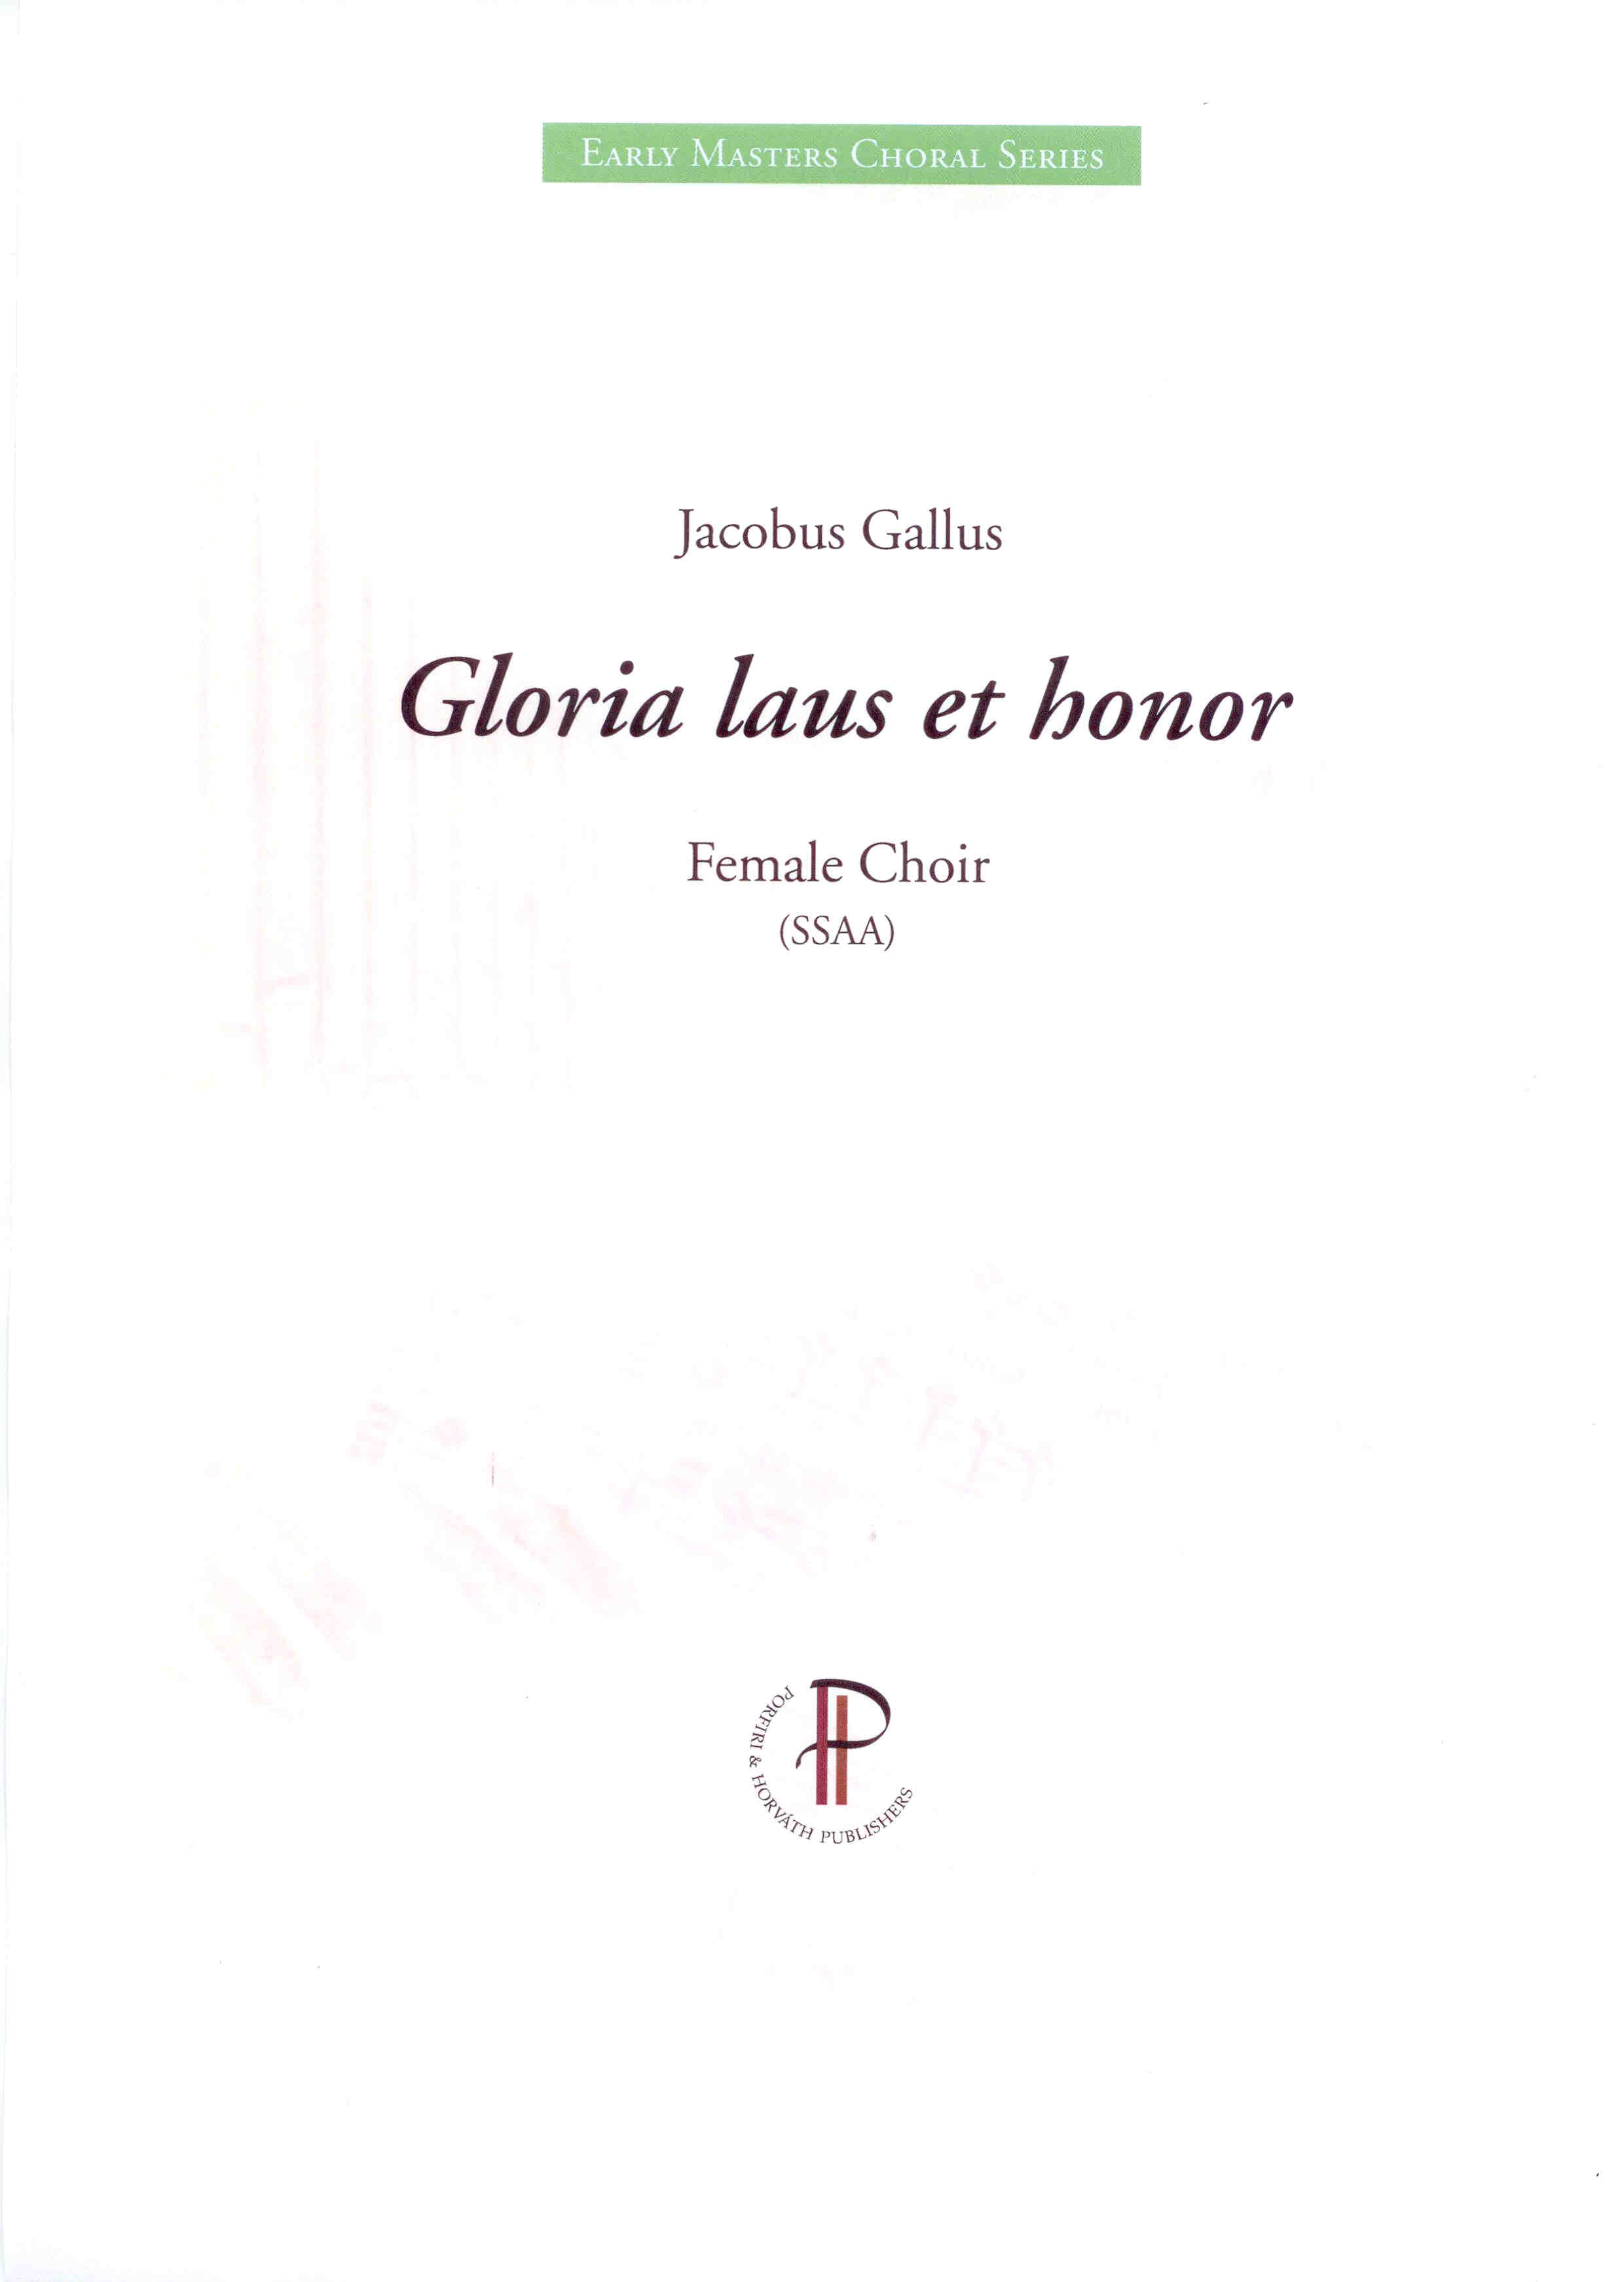 Gloria laus et honor